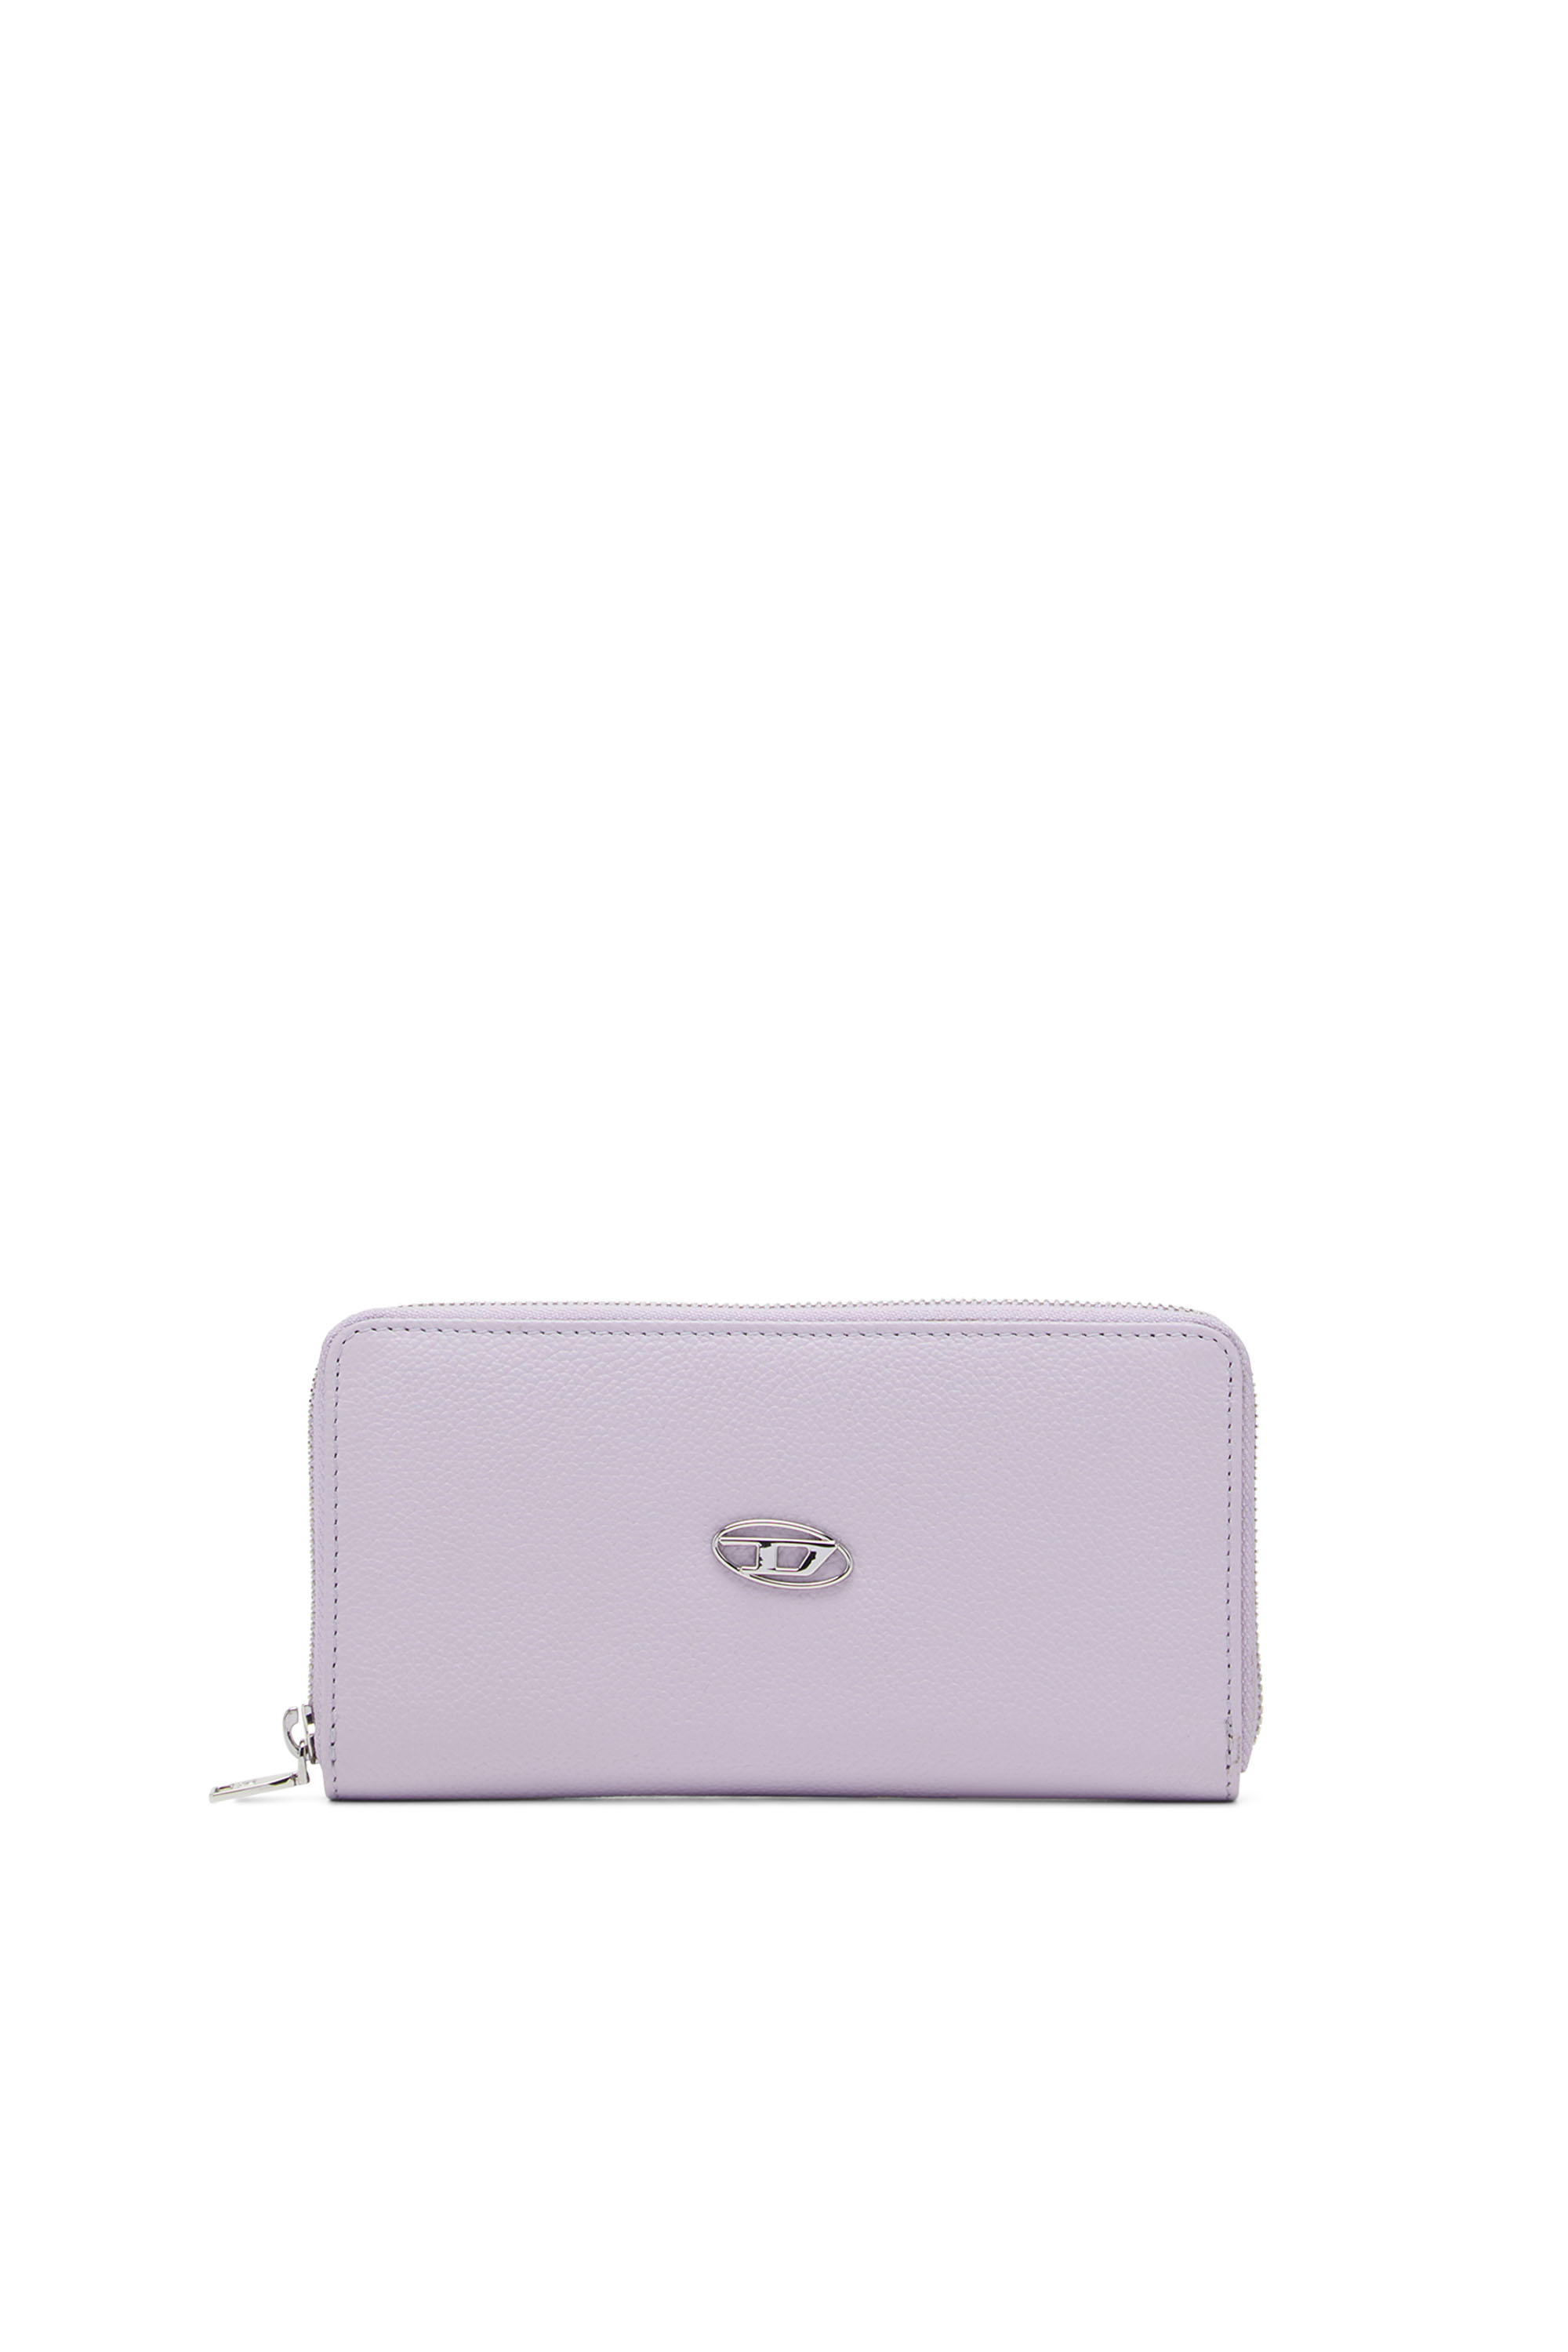 Diesel Wallet - HISSU EVO GARNET wallet purple